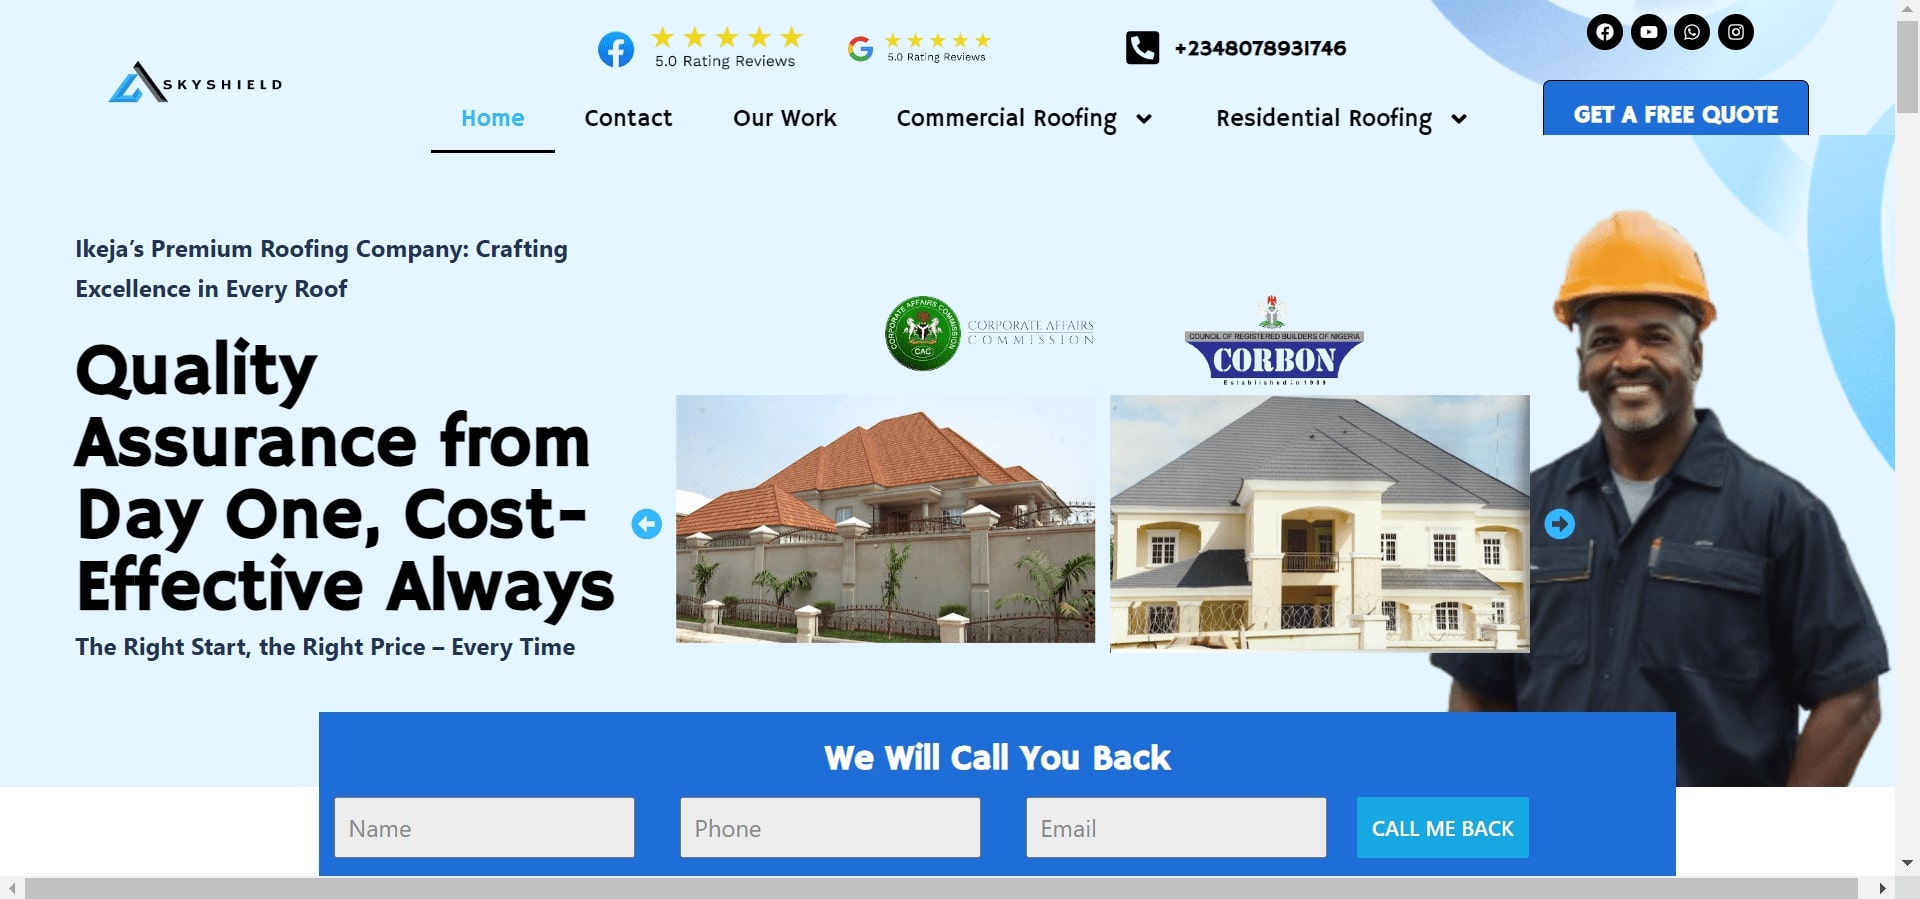 SkyShield roofing besting roofing website nigeria